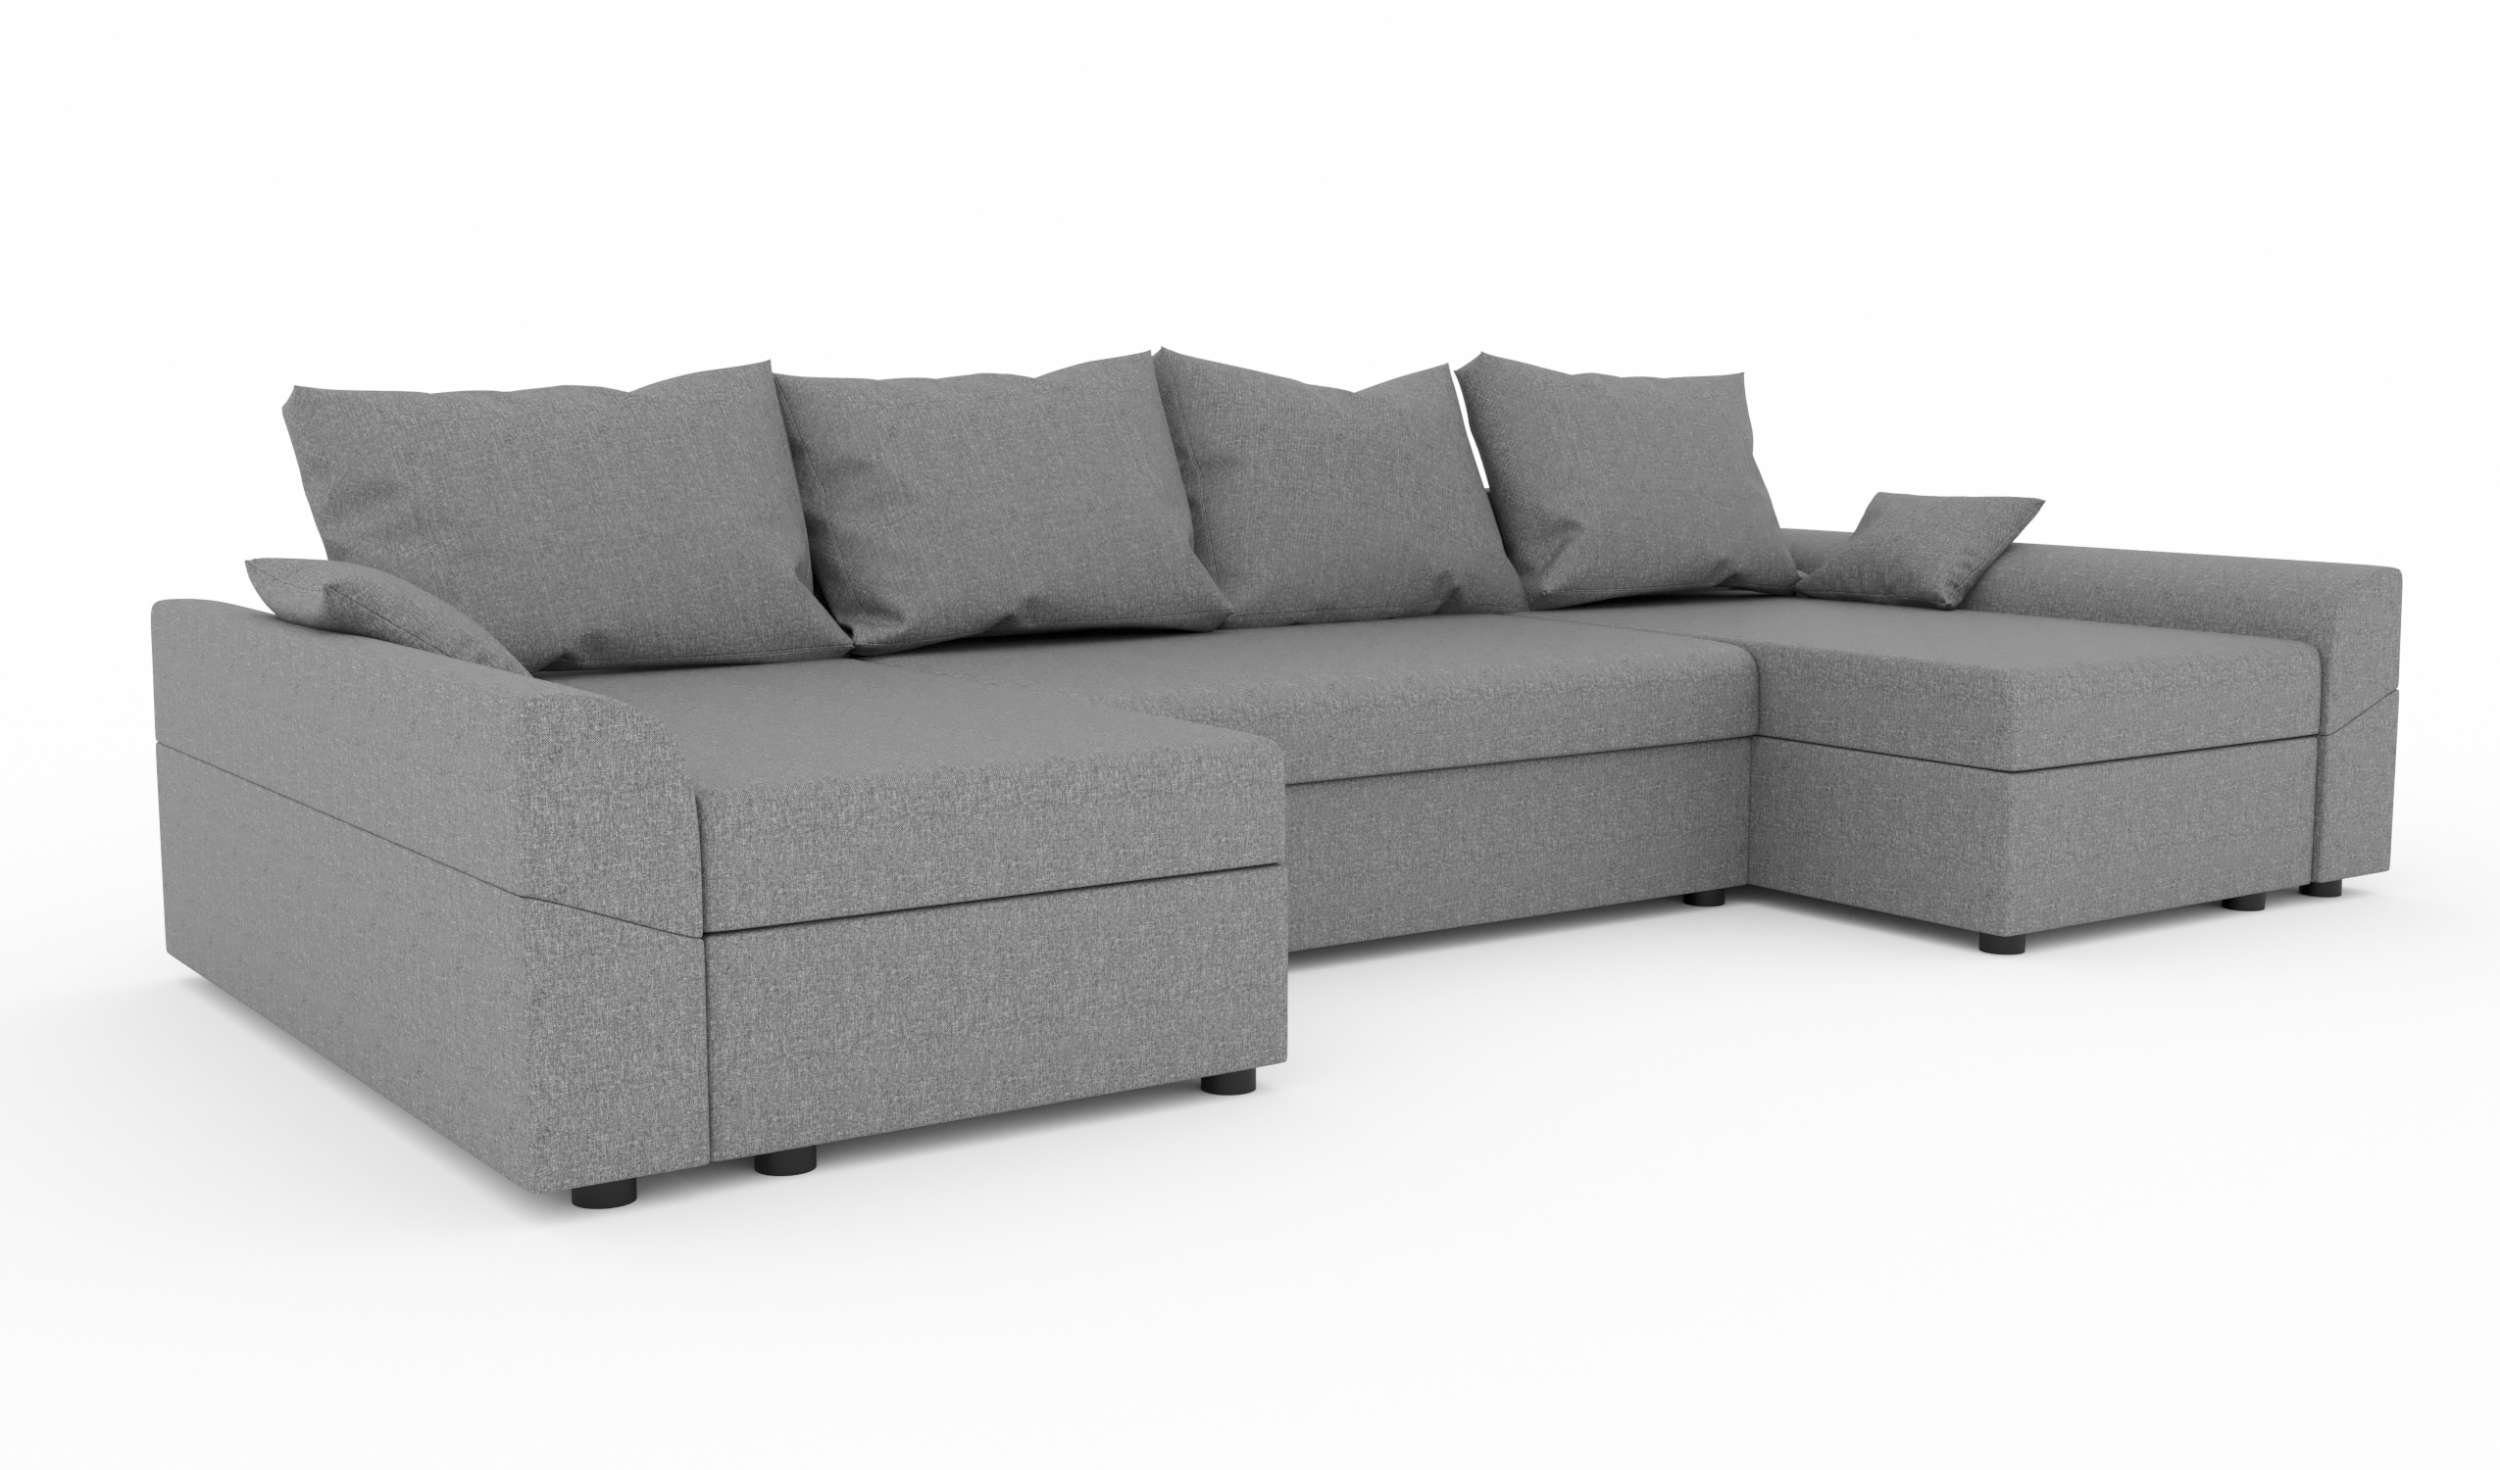 Stylefy Wohnlandschaft mit Sofa, Carolina, U-Form, Bettfunktion, Bettkasten, Design Modern mit Sitzkomfort, Eckcouch